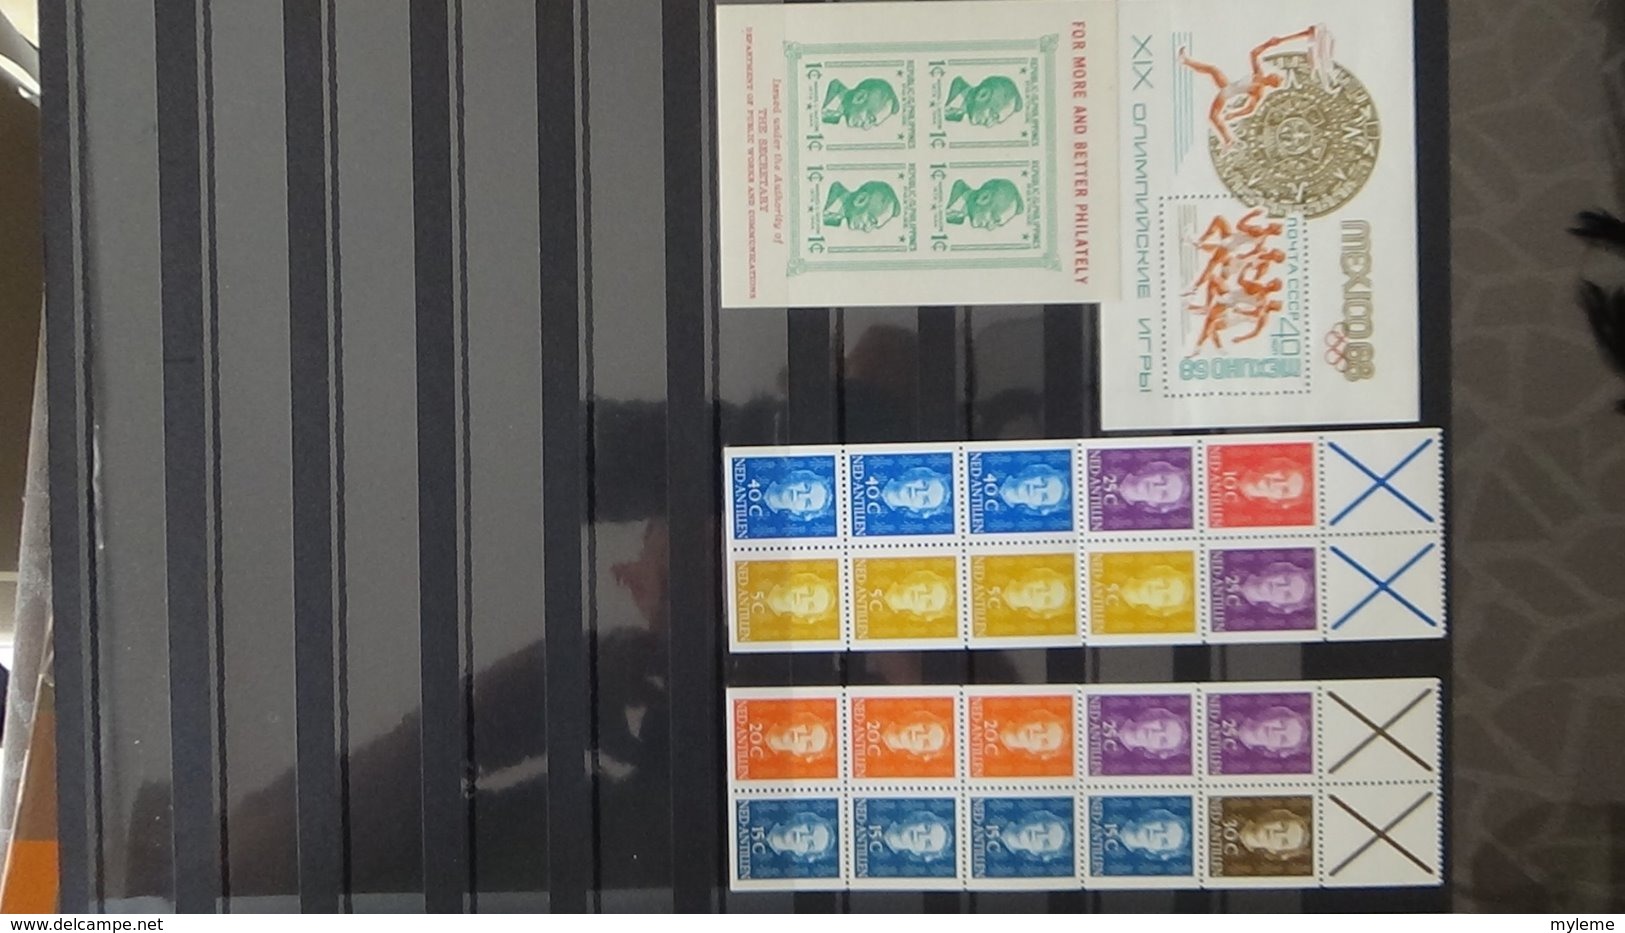 Collection timbres et blocs ** de différents pays A saisir !!!